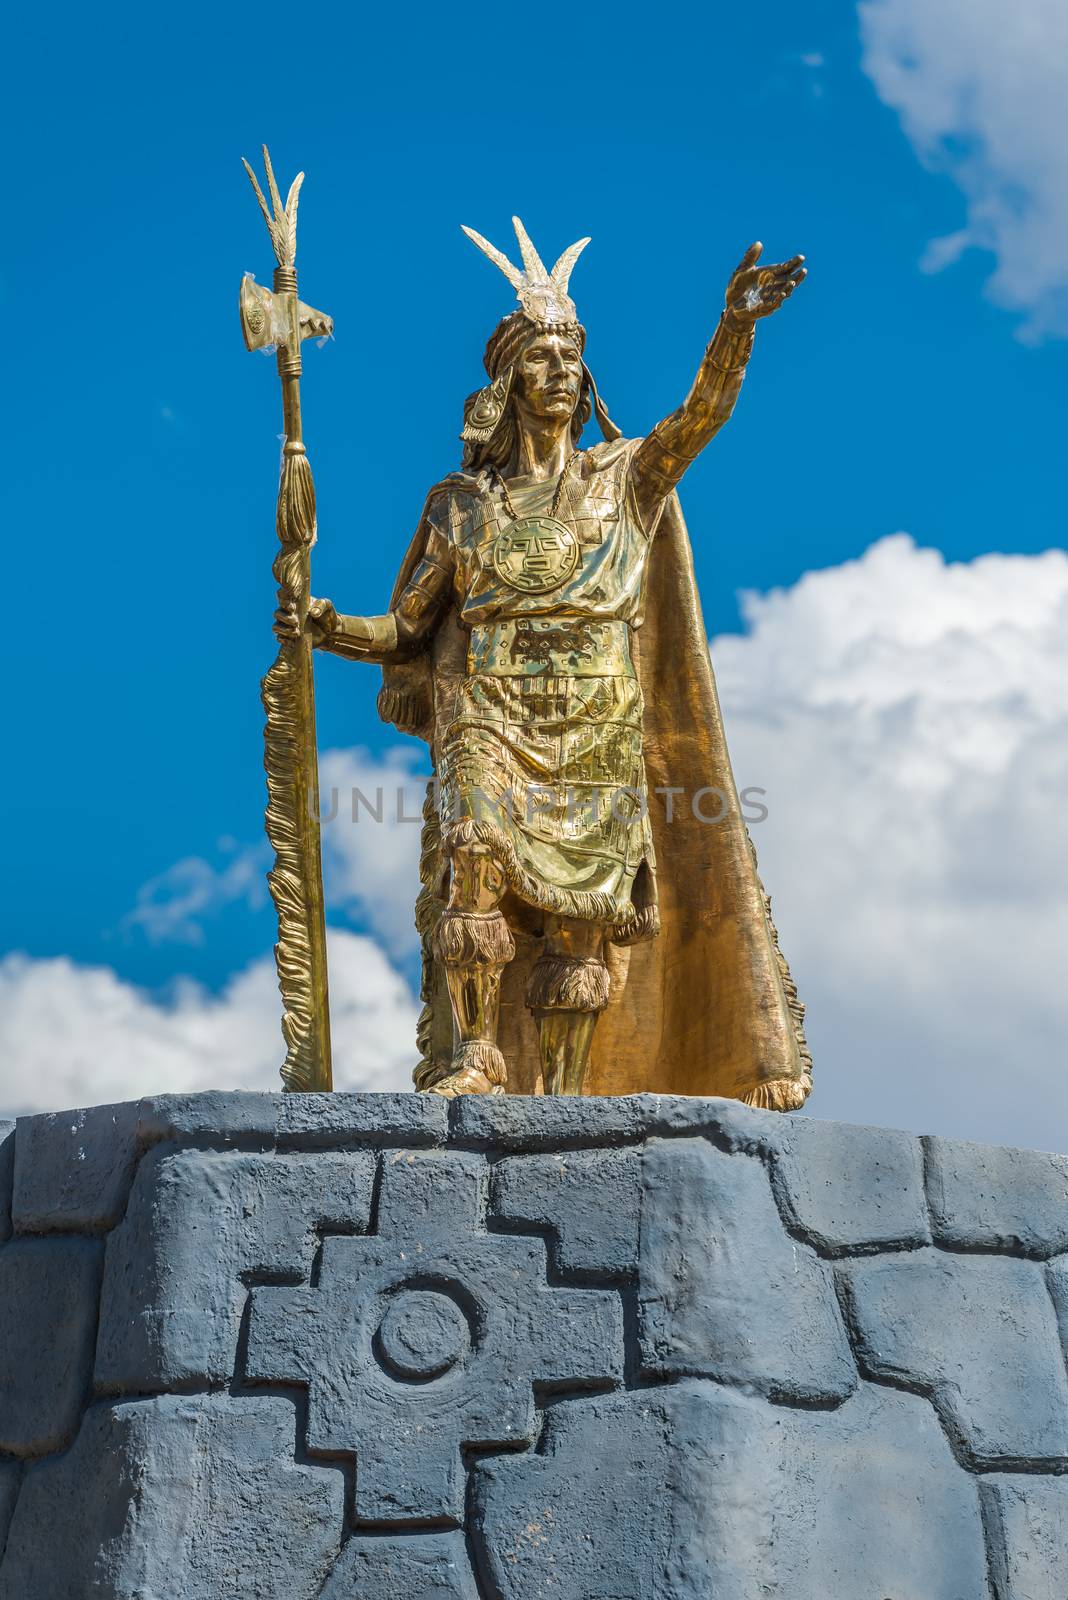 Pachacutec Inca statue in Plaza de Armas of Cuzco Peru